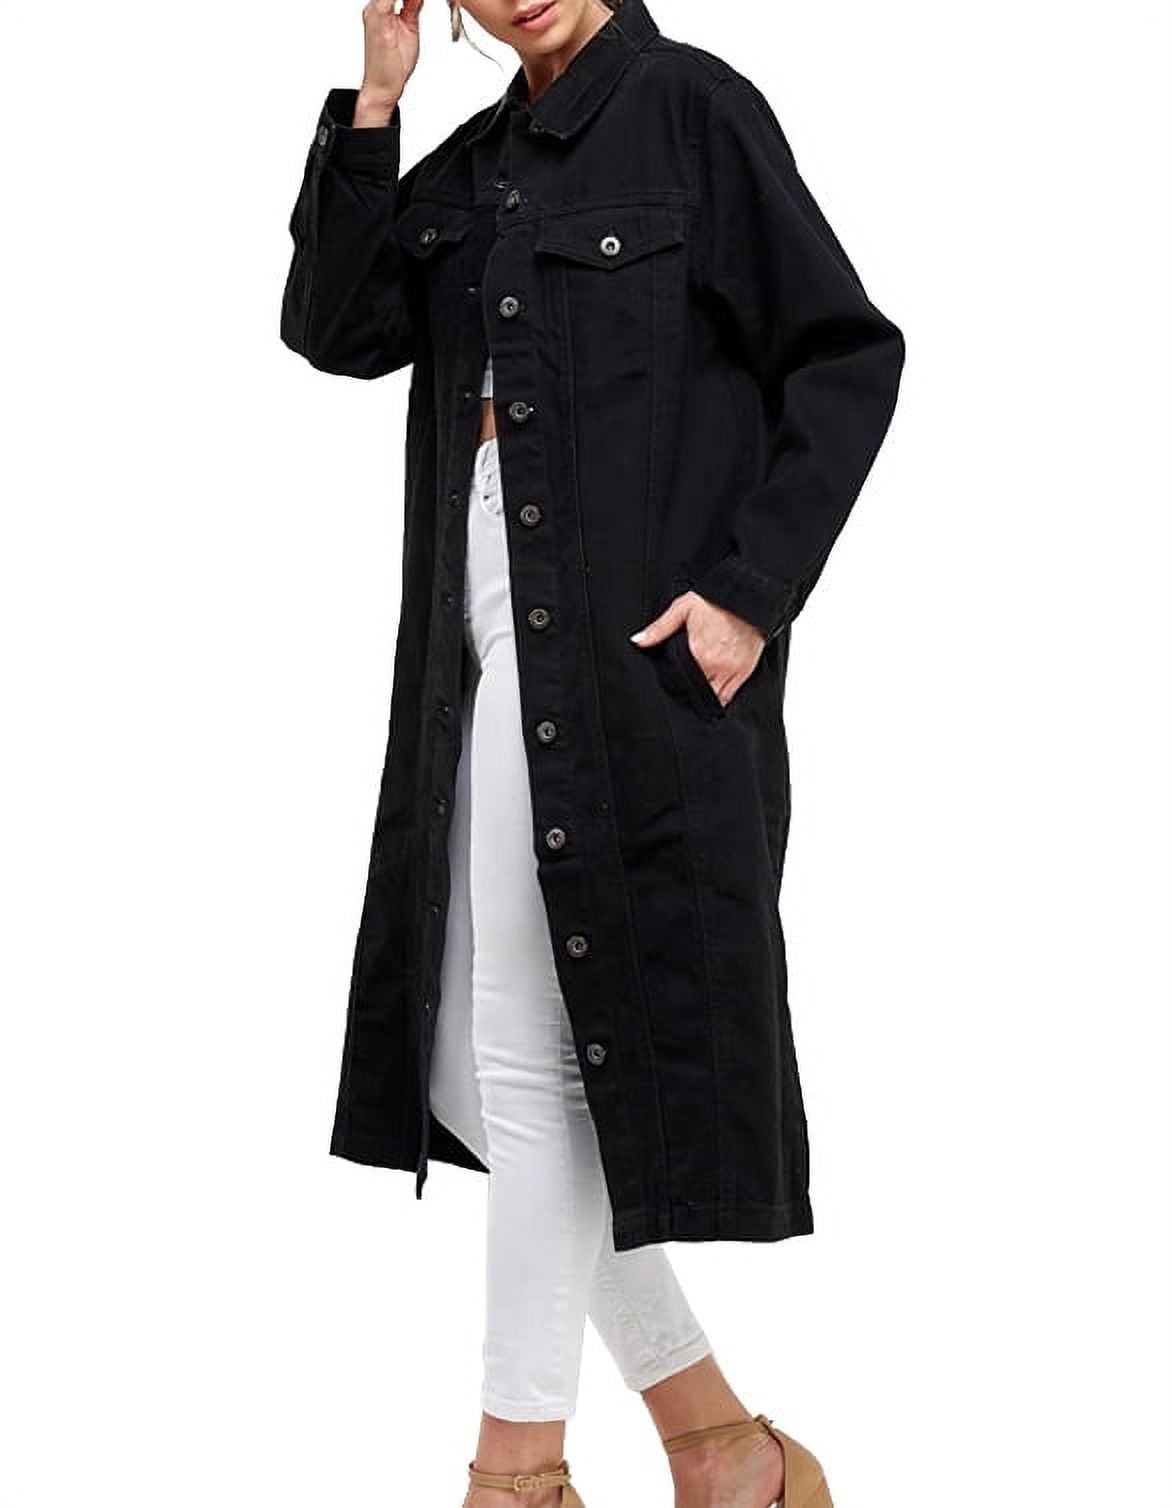 Women's Long Casual Maxi Length Denim Cotton Coat Oversize Button Up Jean  Jacket (Black, M) 